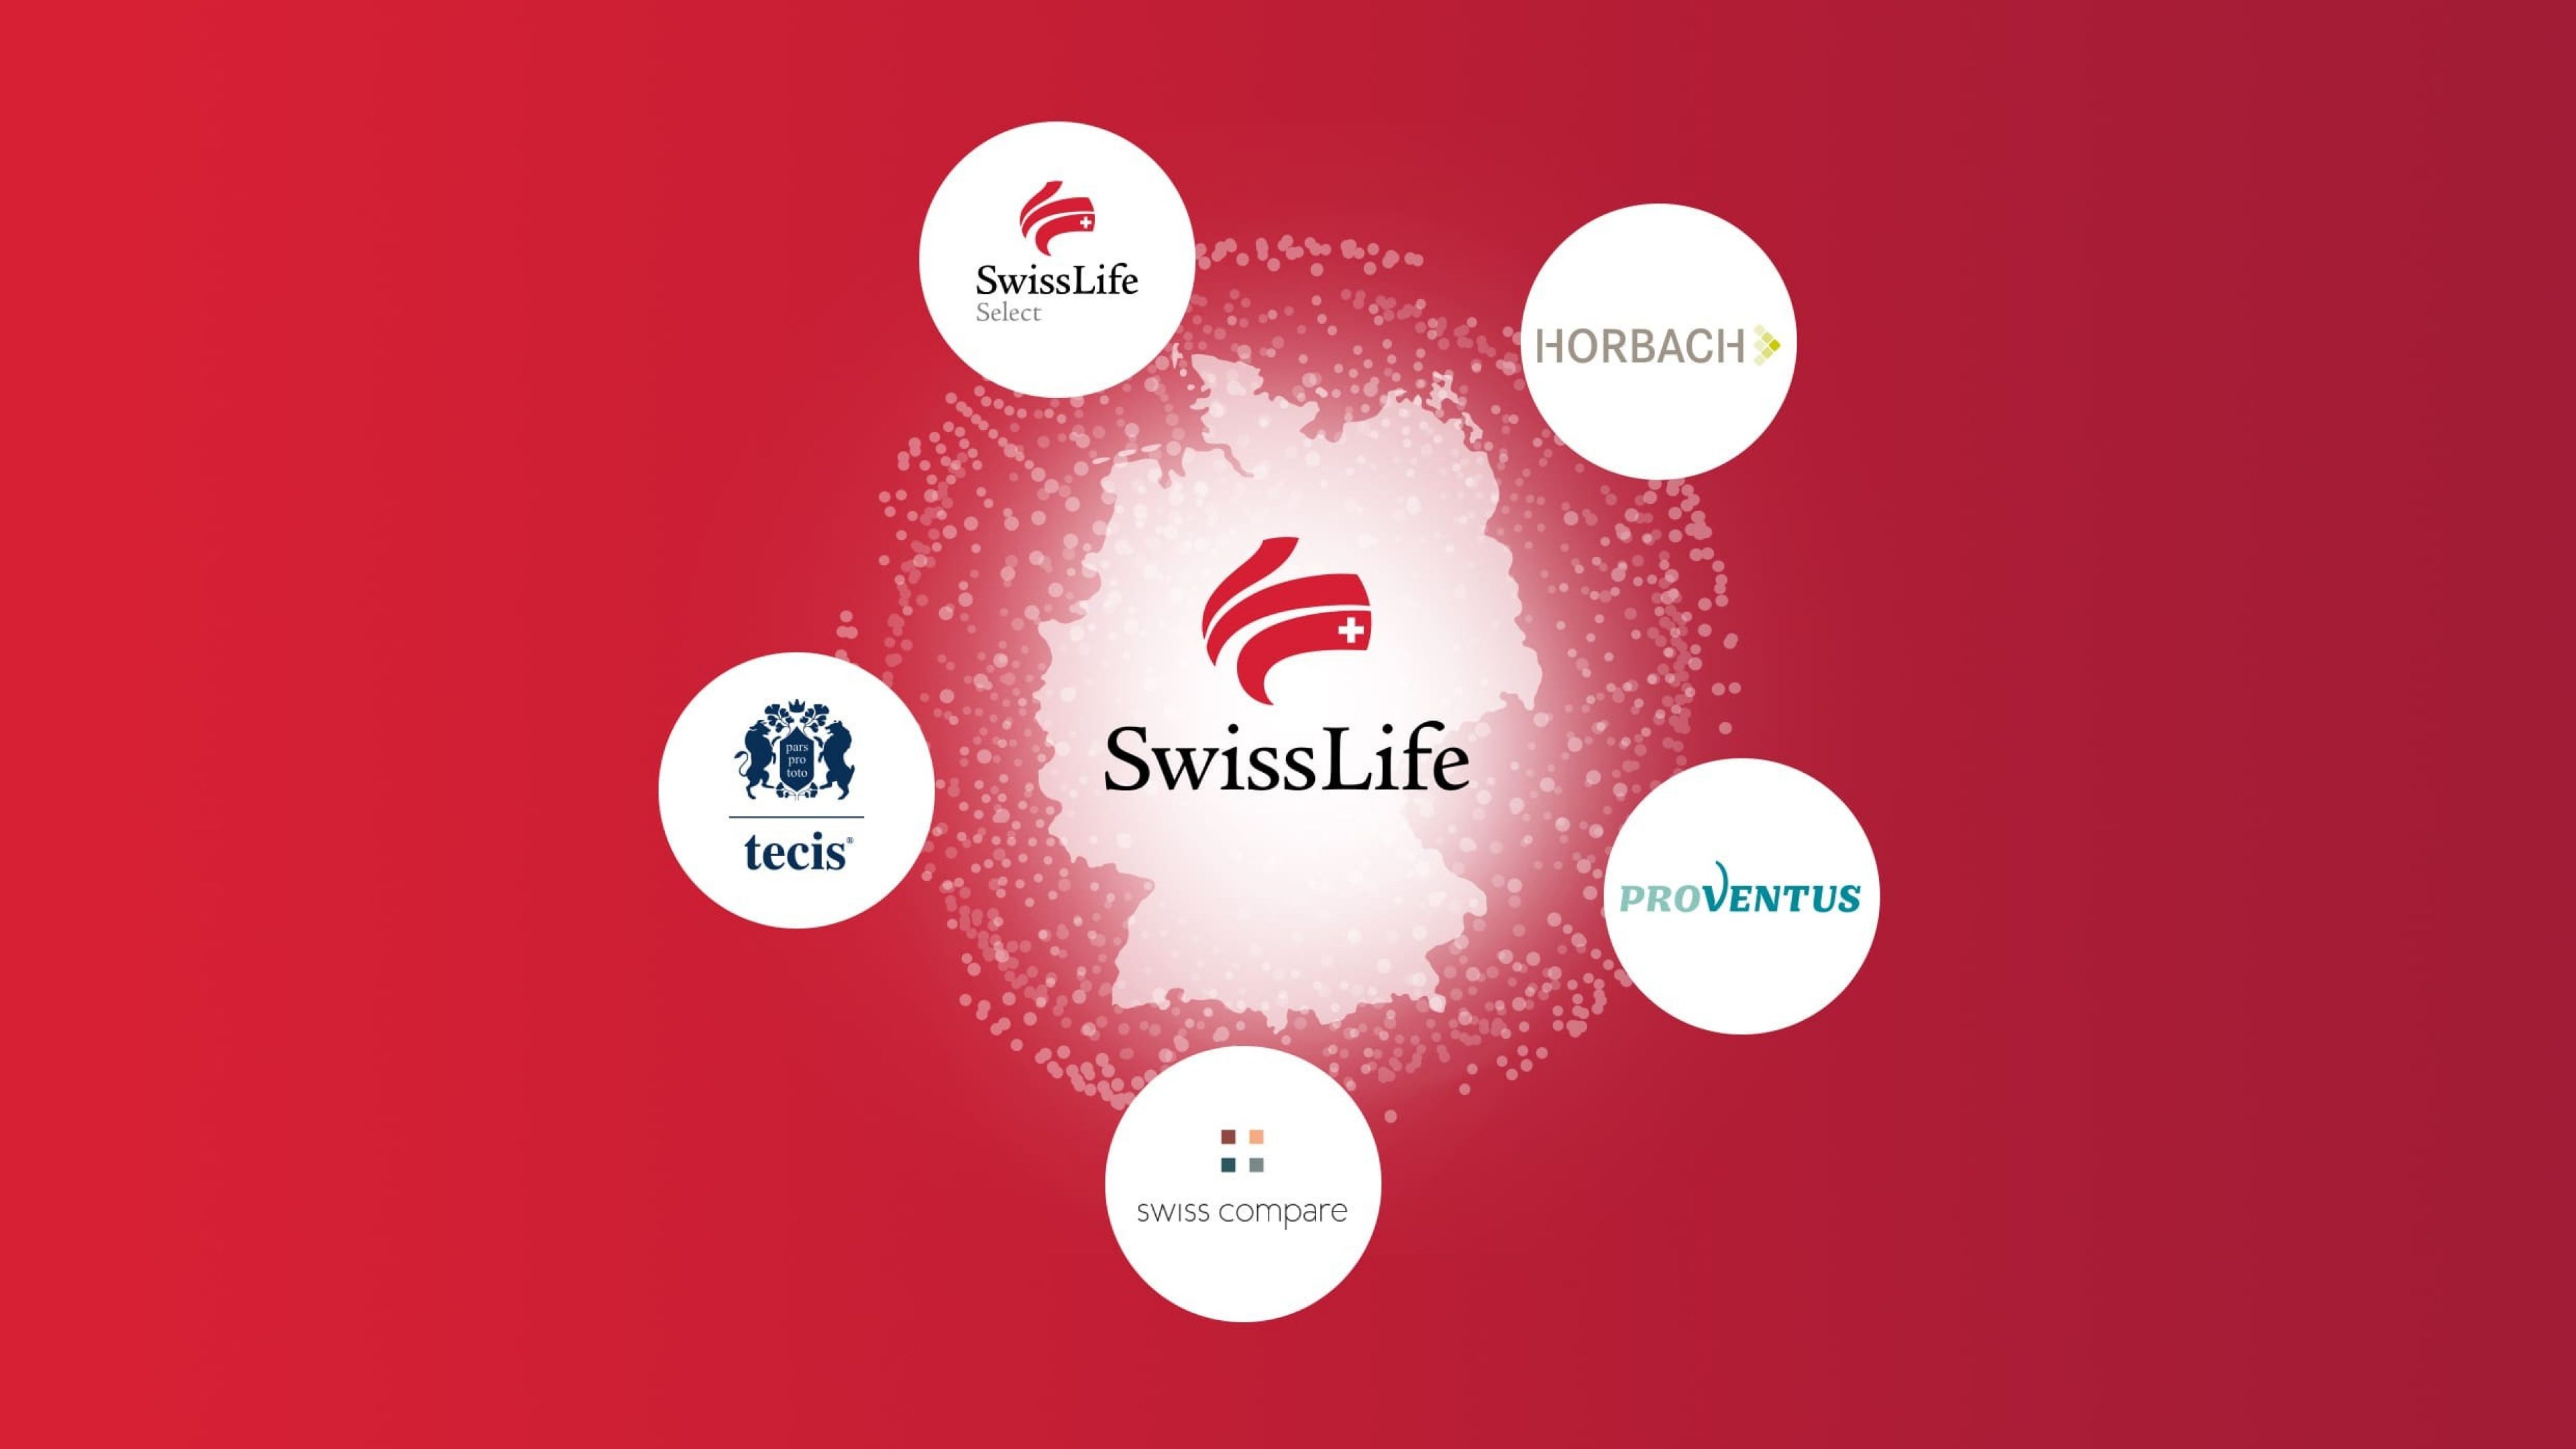 Weitere Marken von Swiss Life Deutschland sind tecis, HORBACH; Proventus, Swiss Life Select und swiss compare